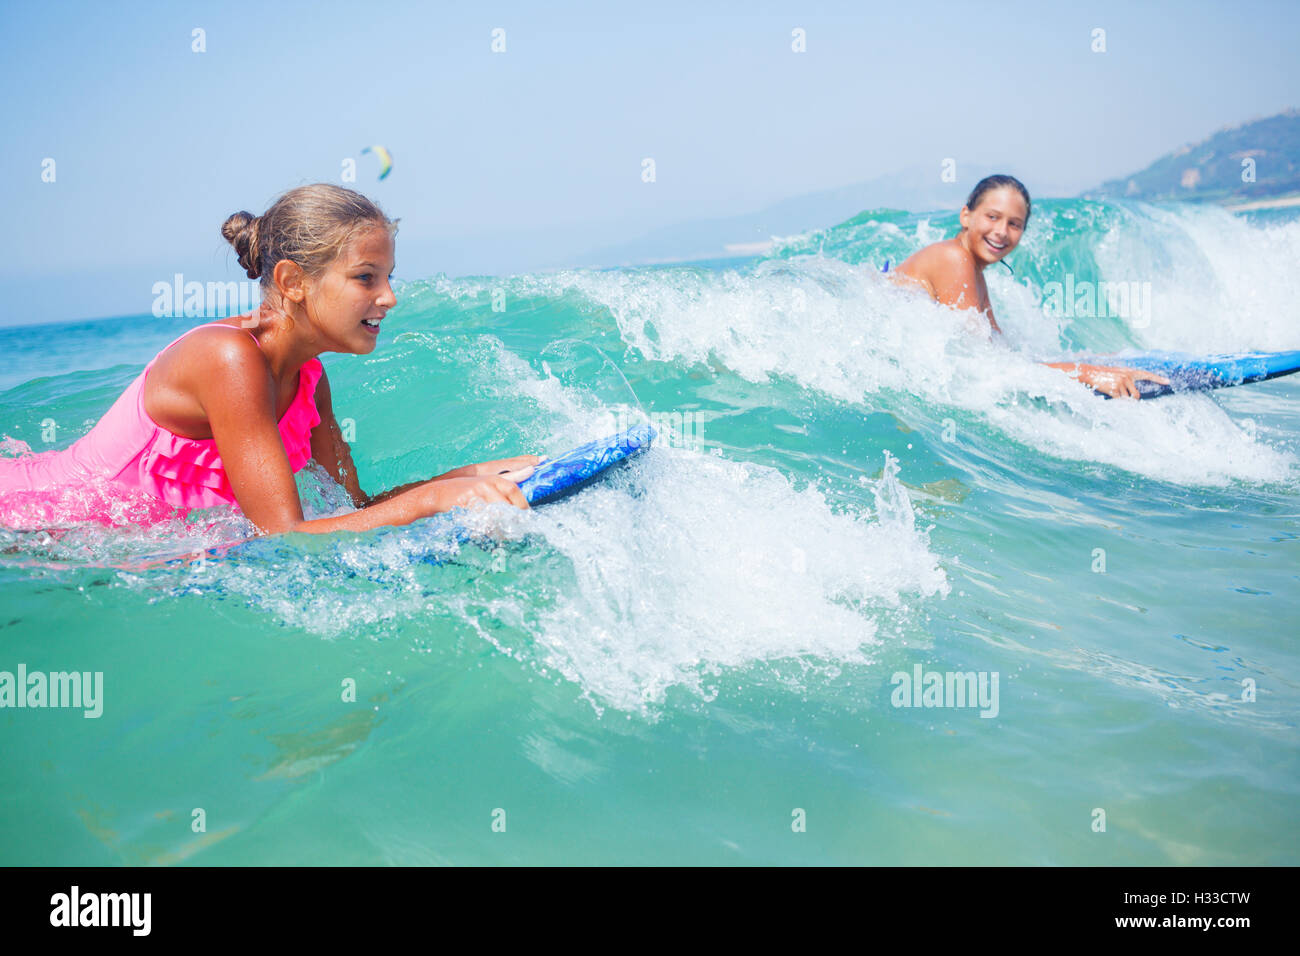 Vacanze estive - surfer ragazze. Foto Stock